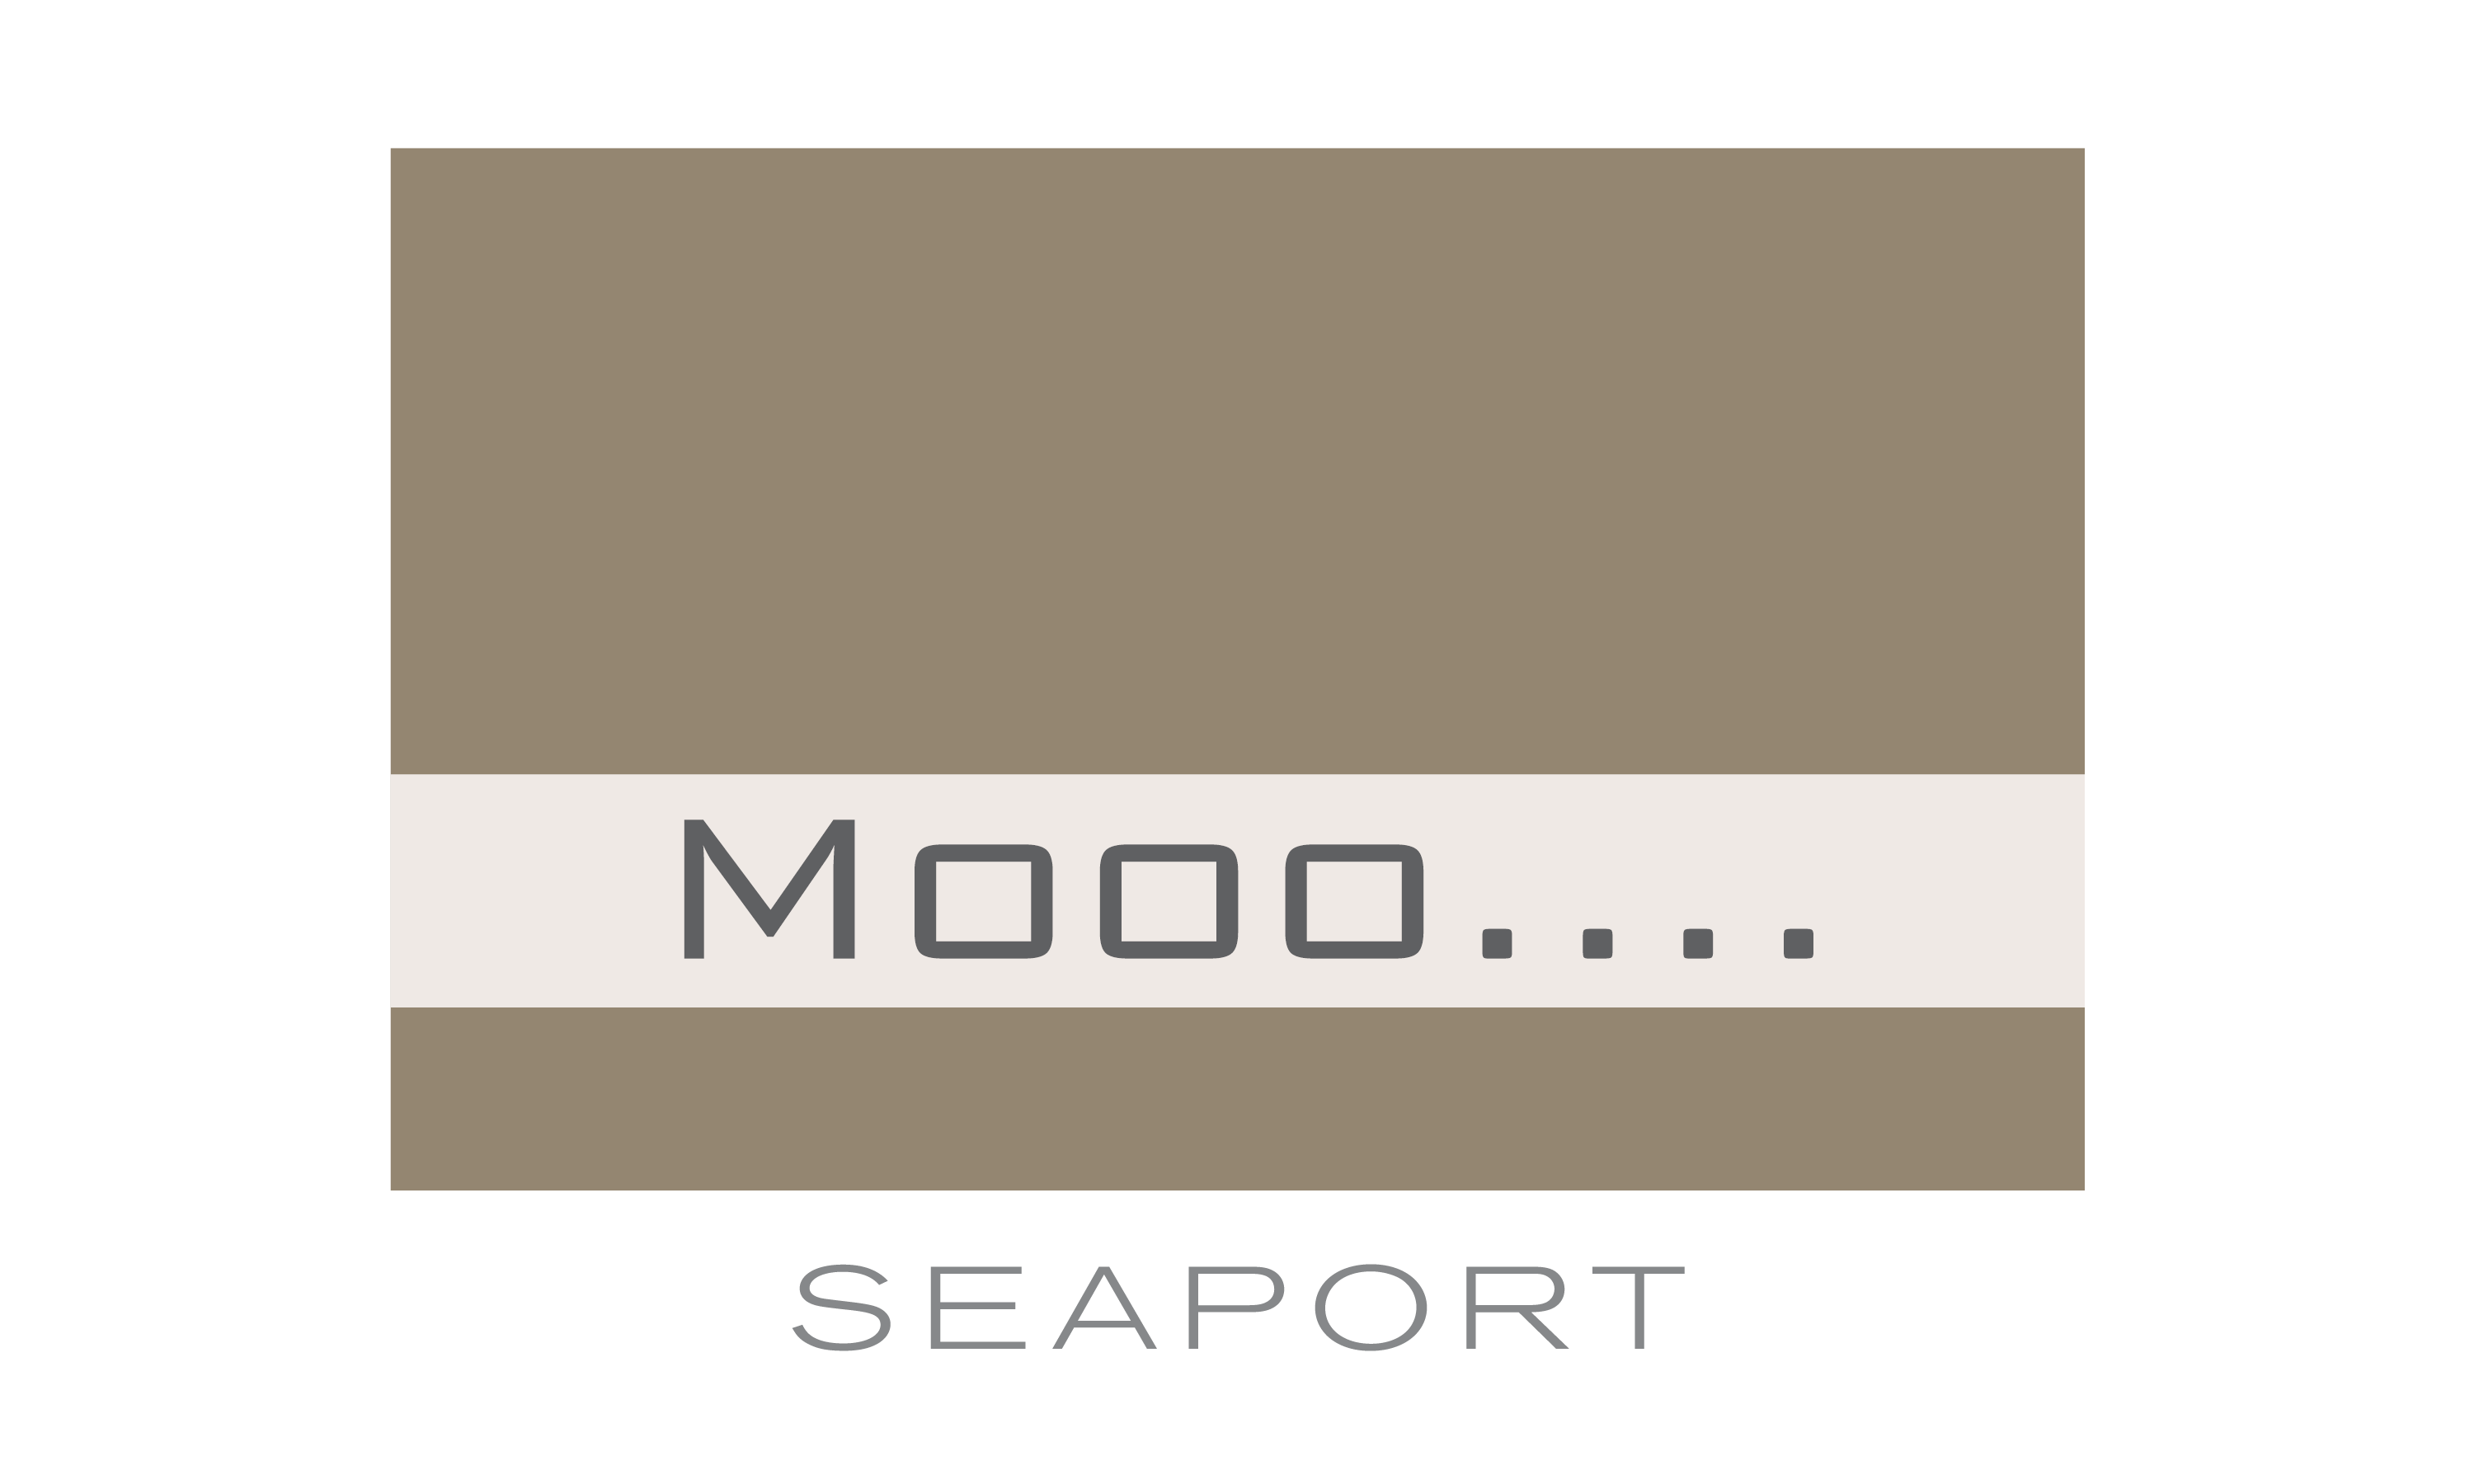 Mooo.... Seaport